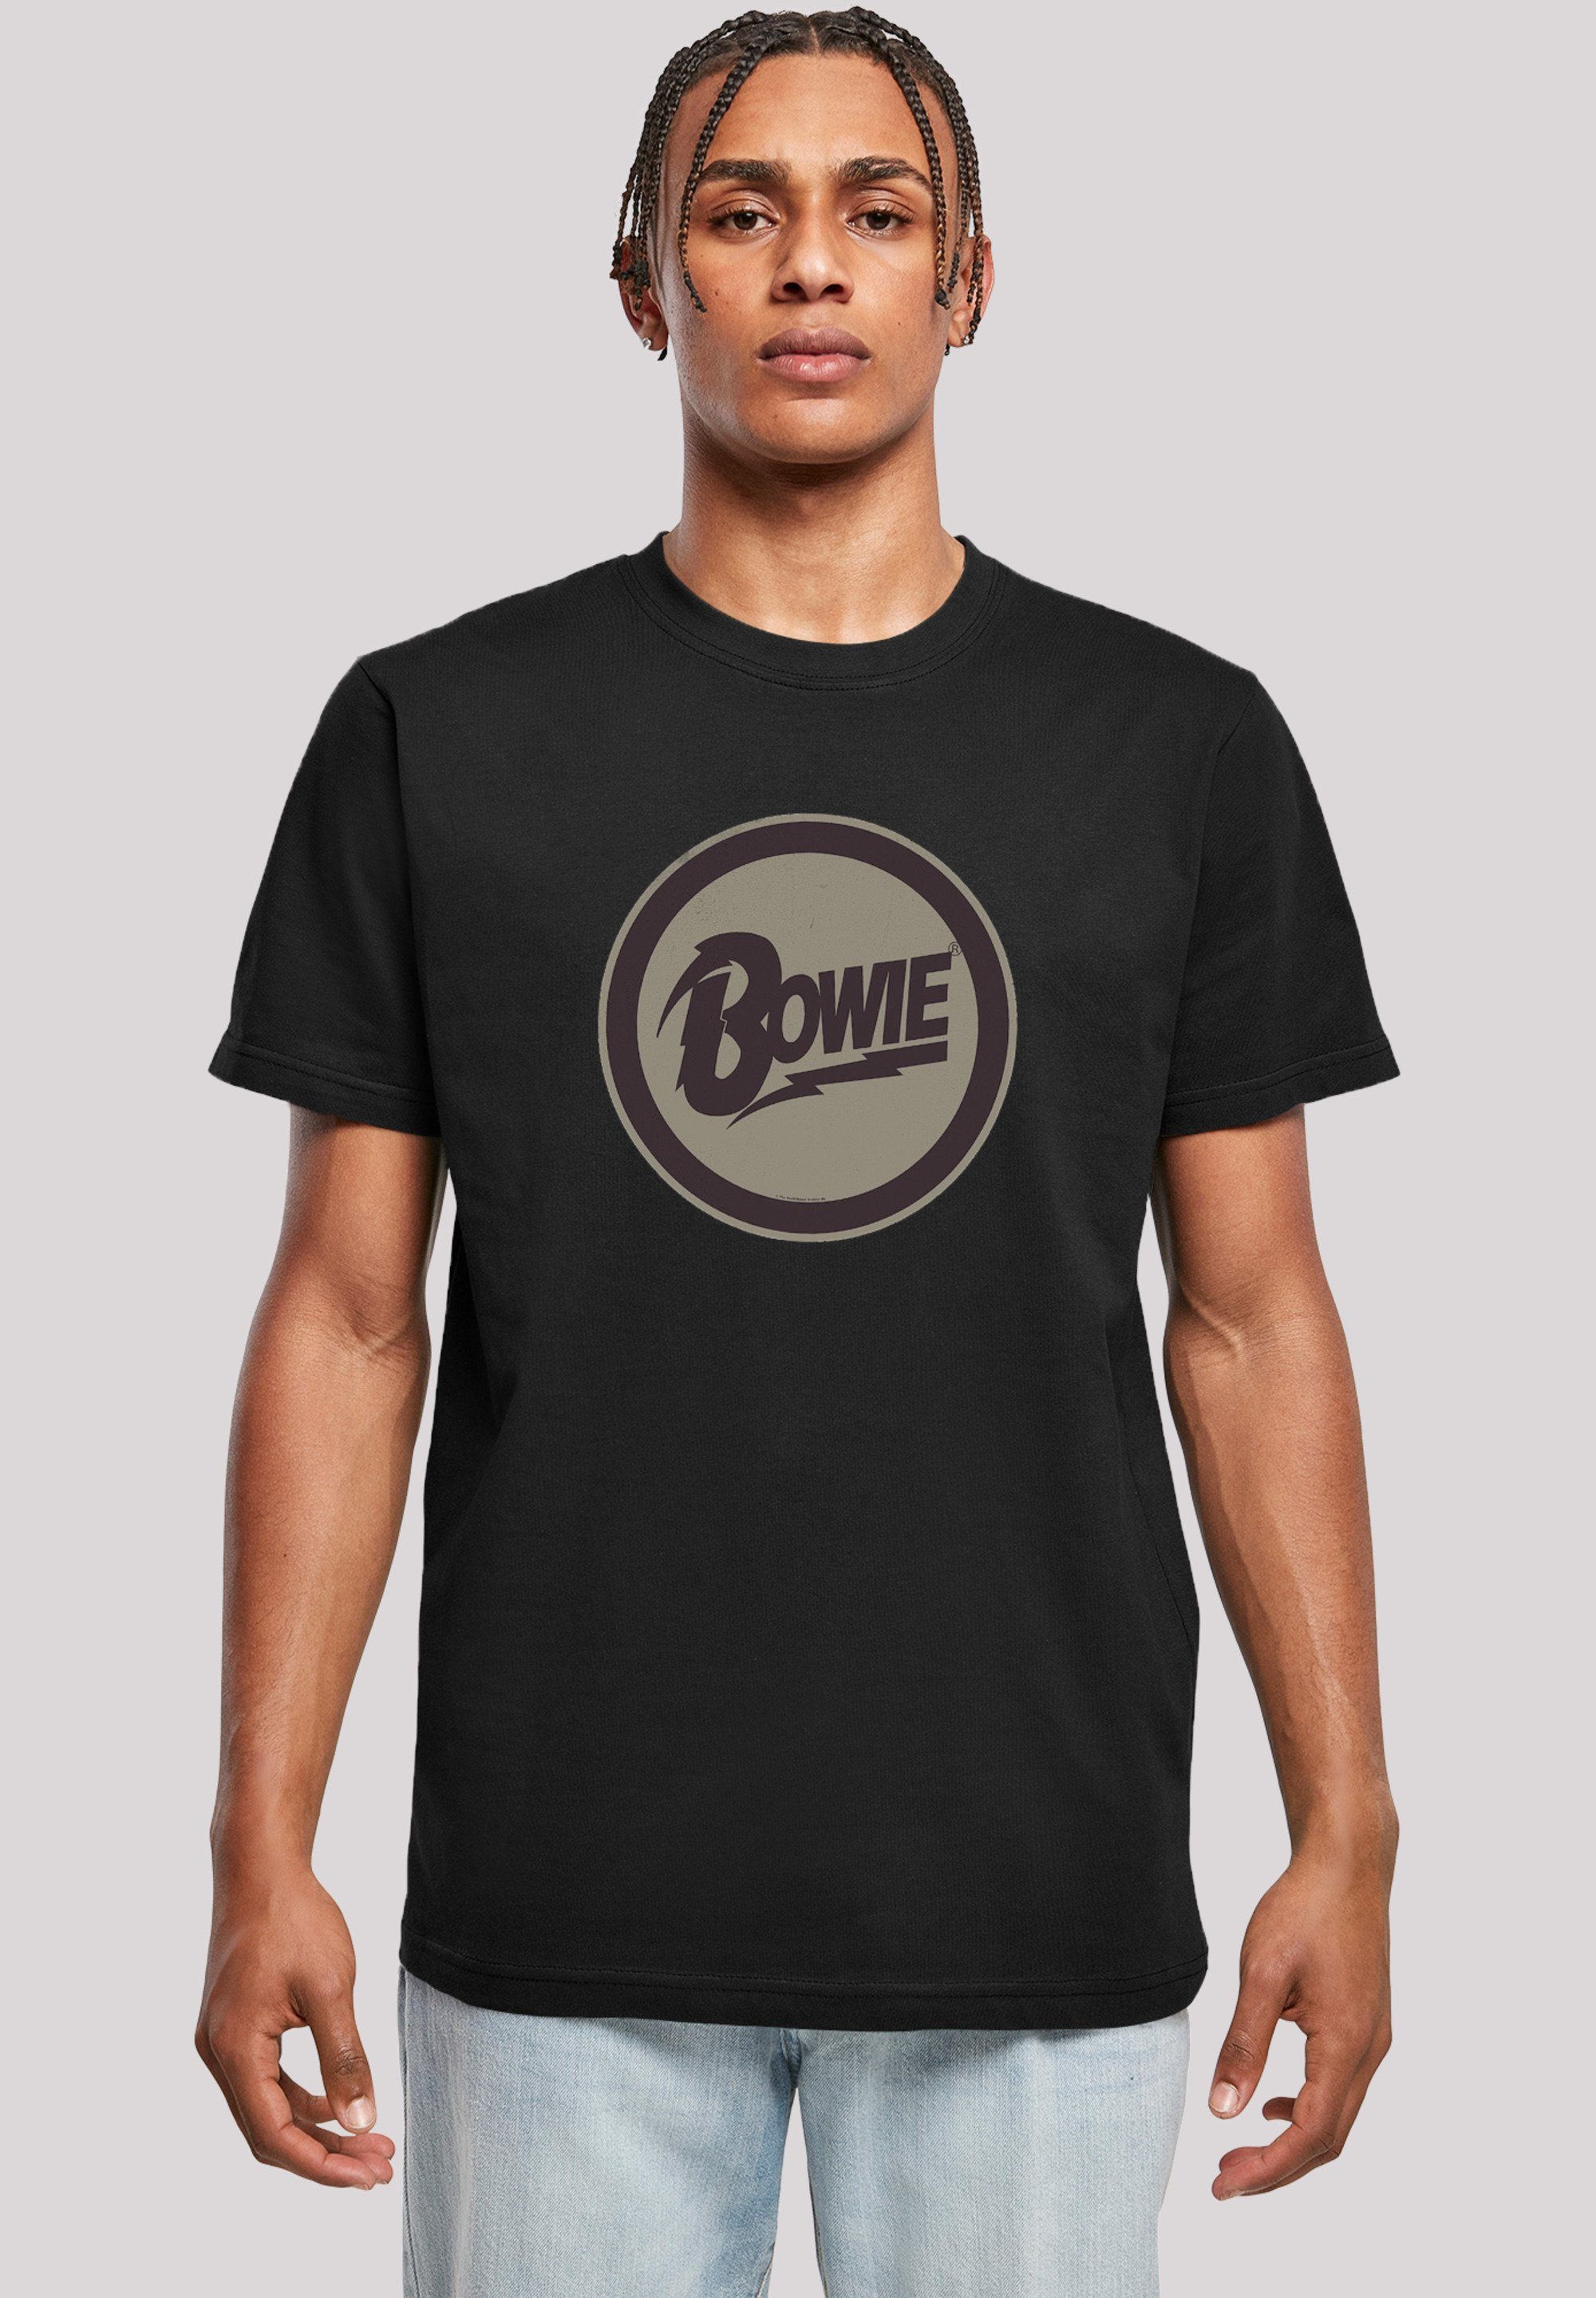 Merch,Regular-Fit,Basic,Bandshirt Bowie David Logo F4NT4STIC schwarz T-Shirt Herren,Premium